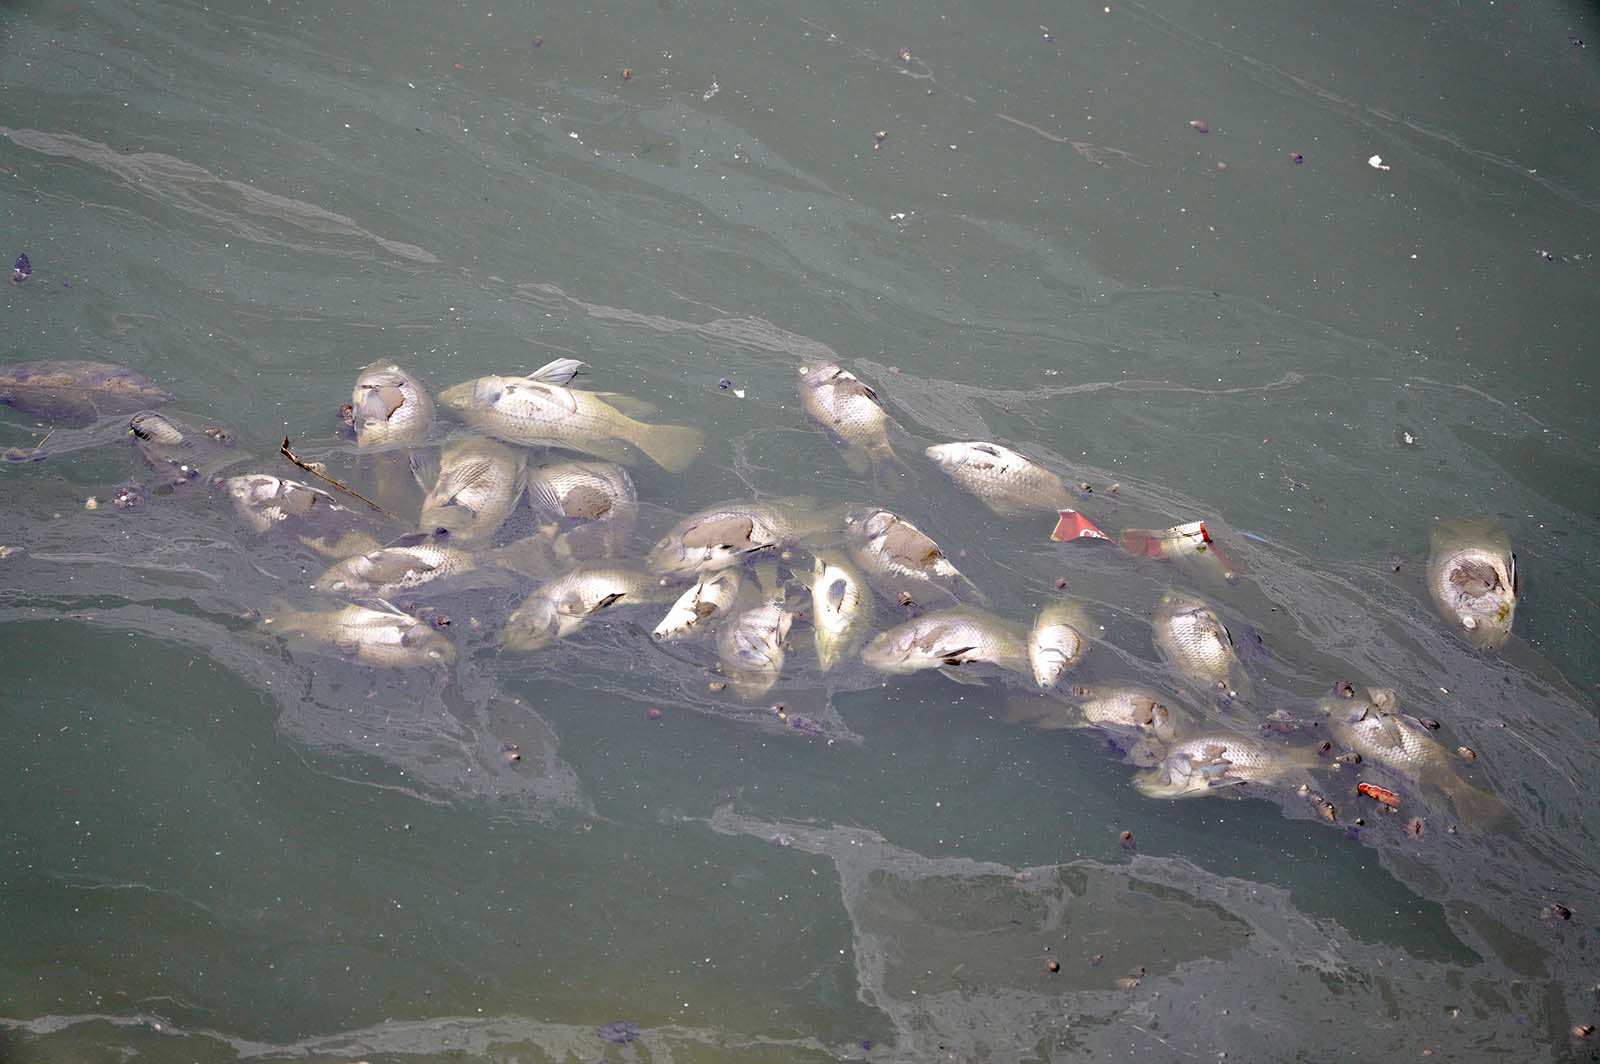 Gần 10 ngày qua, tại hồ Bách Hợp Thủy rộng 6ha trong công viên Thiên văn học (quận Hà Đông, Hà Nội), cá chết nổi trắng một góc, ngày đêm bốc mùi hôi thối.